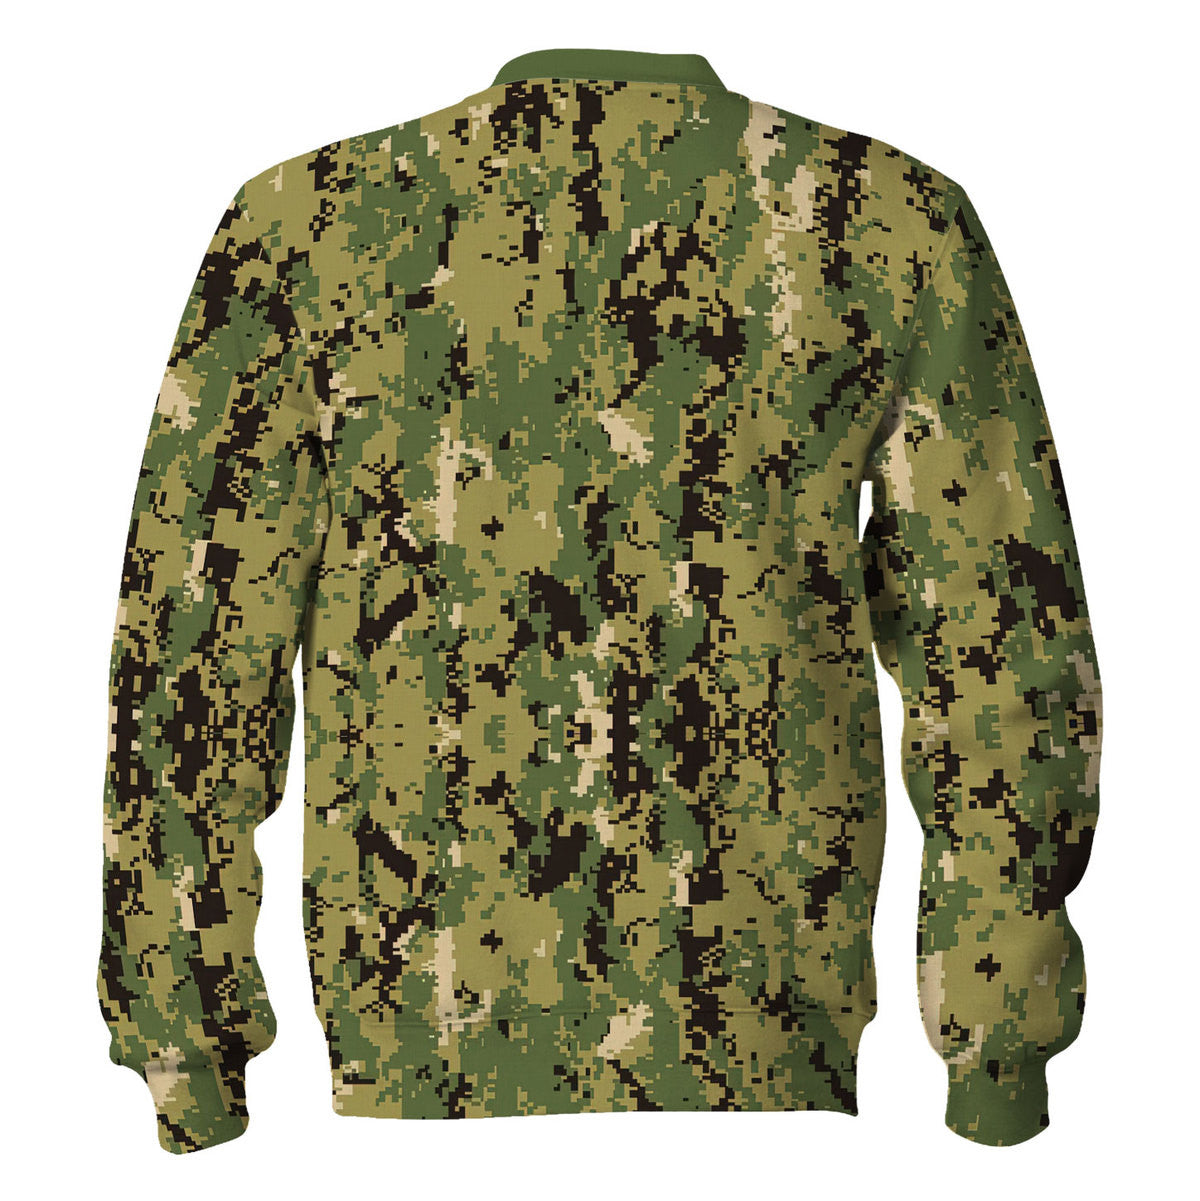 American Navy Working Uniform (NWU) Type III (AOR-2) Woodland Camo Sweatshirt